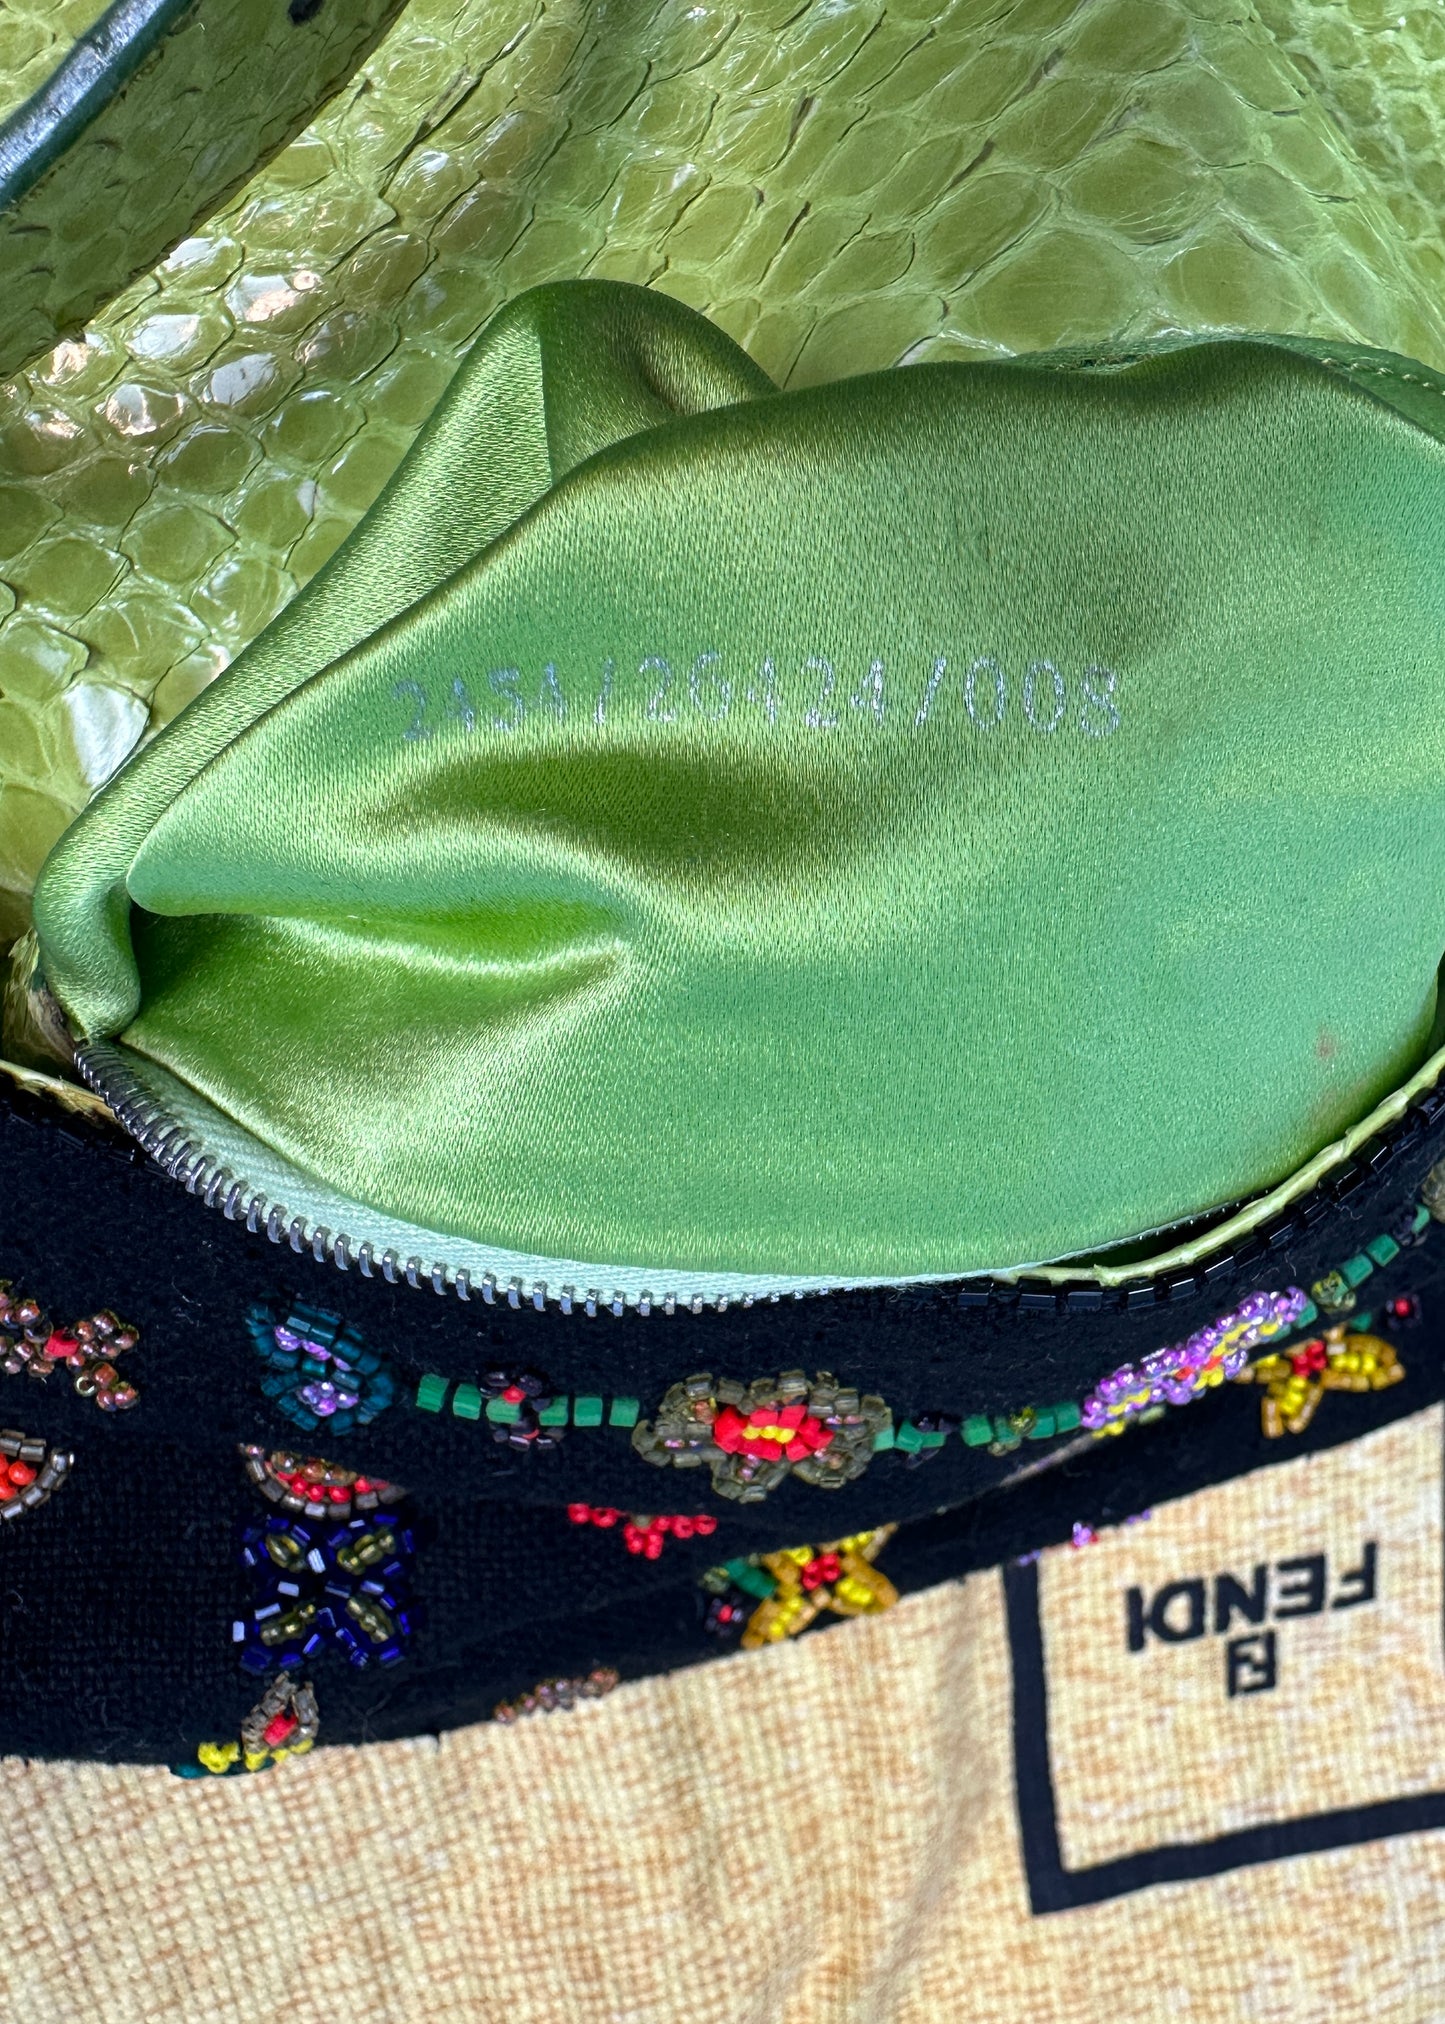 Fendi Beaded Embellished Floral Baguette Bag